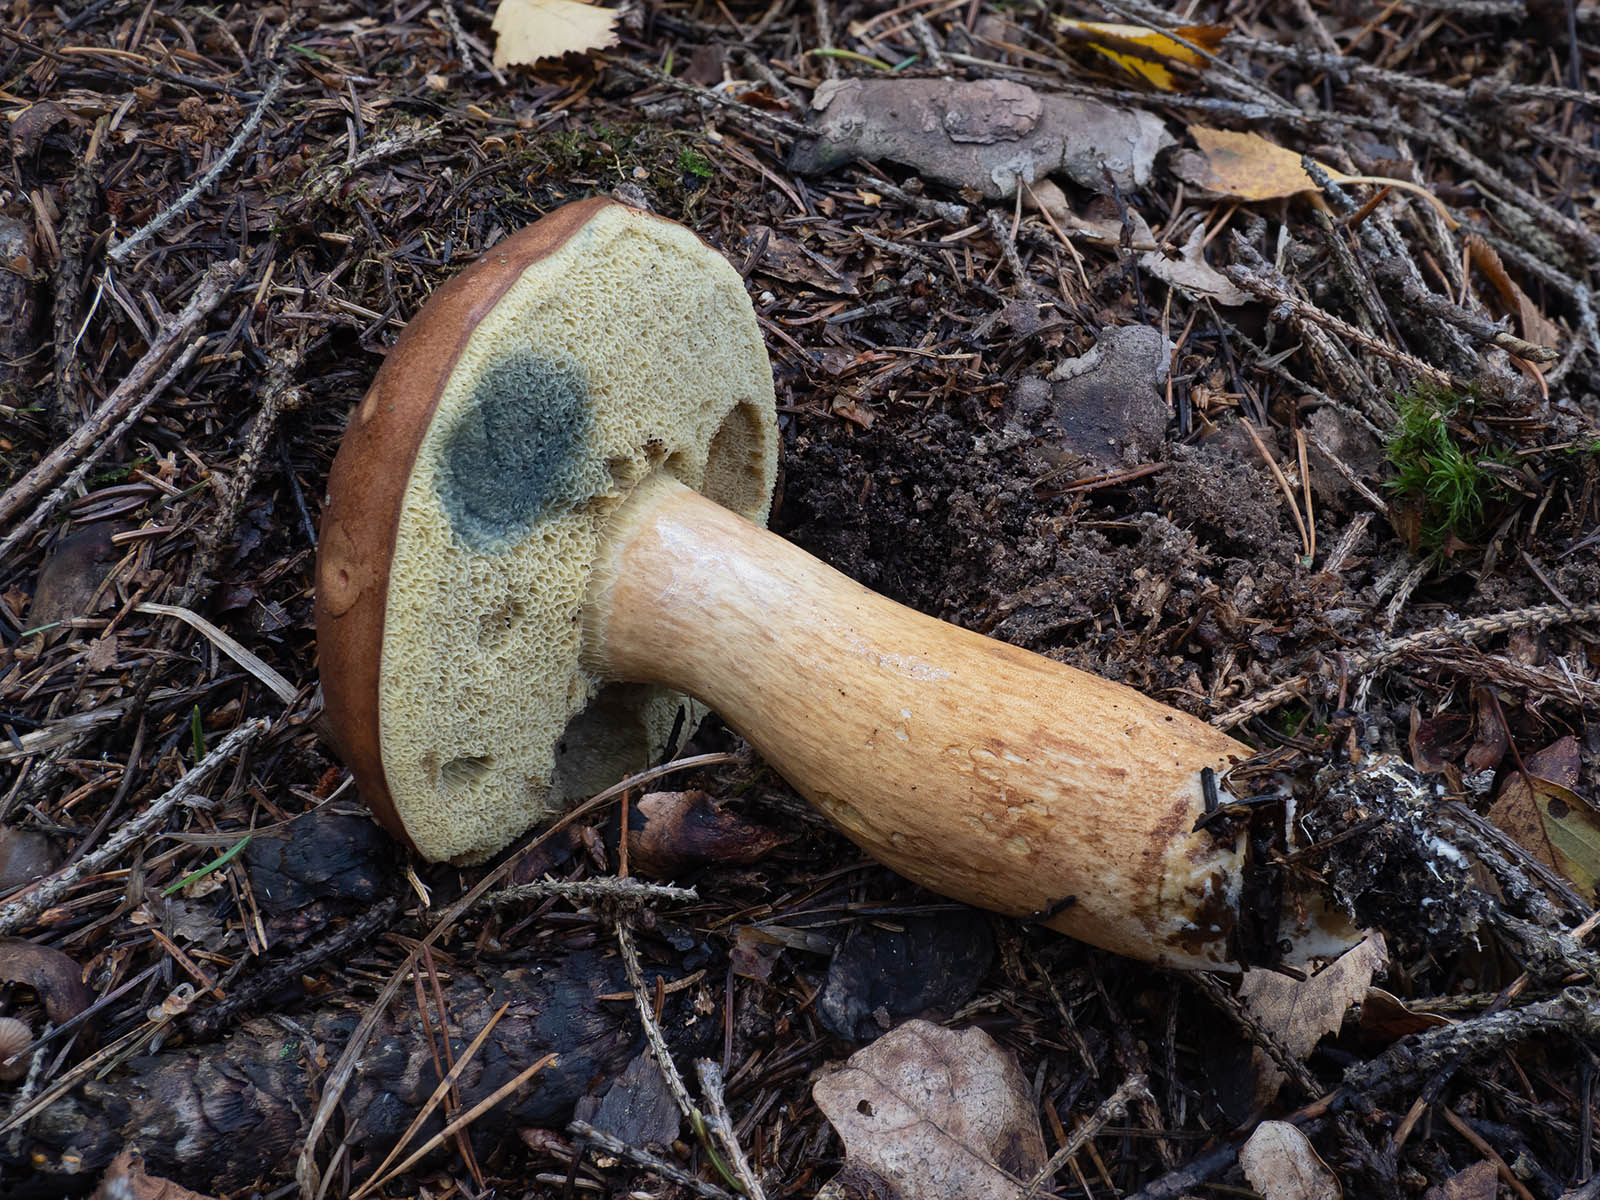 Польский гриб (Imleria badia) в природном парке G?rv?ln, Стокгольм, октябрь 2020 года. Автор фото: Сутормина Марина